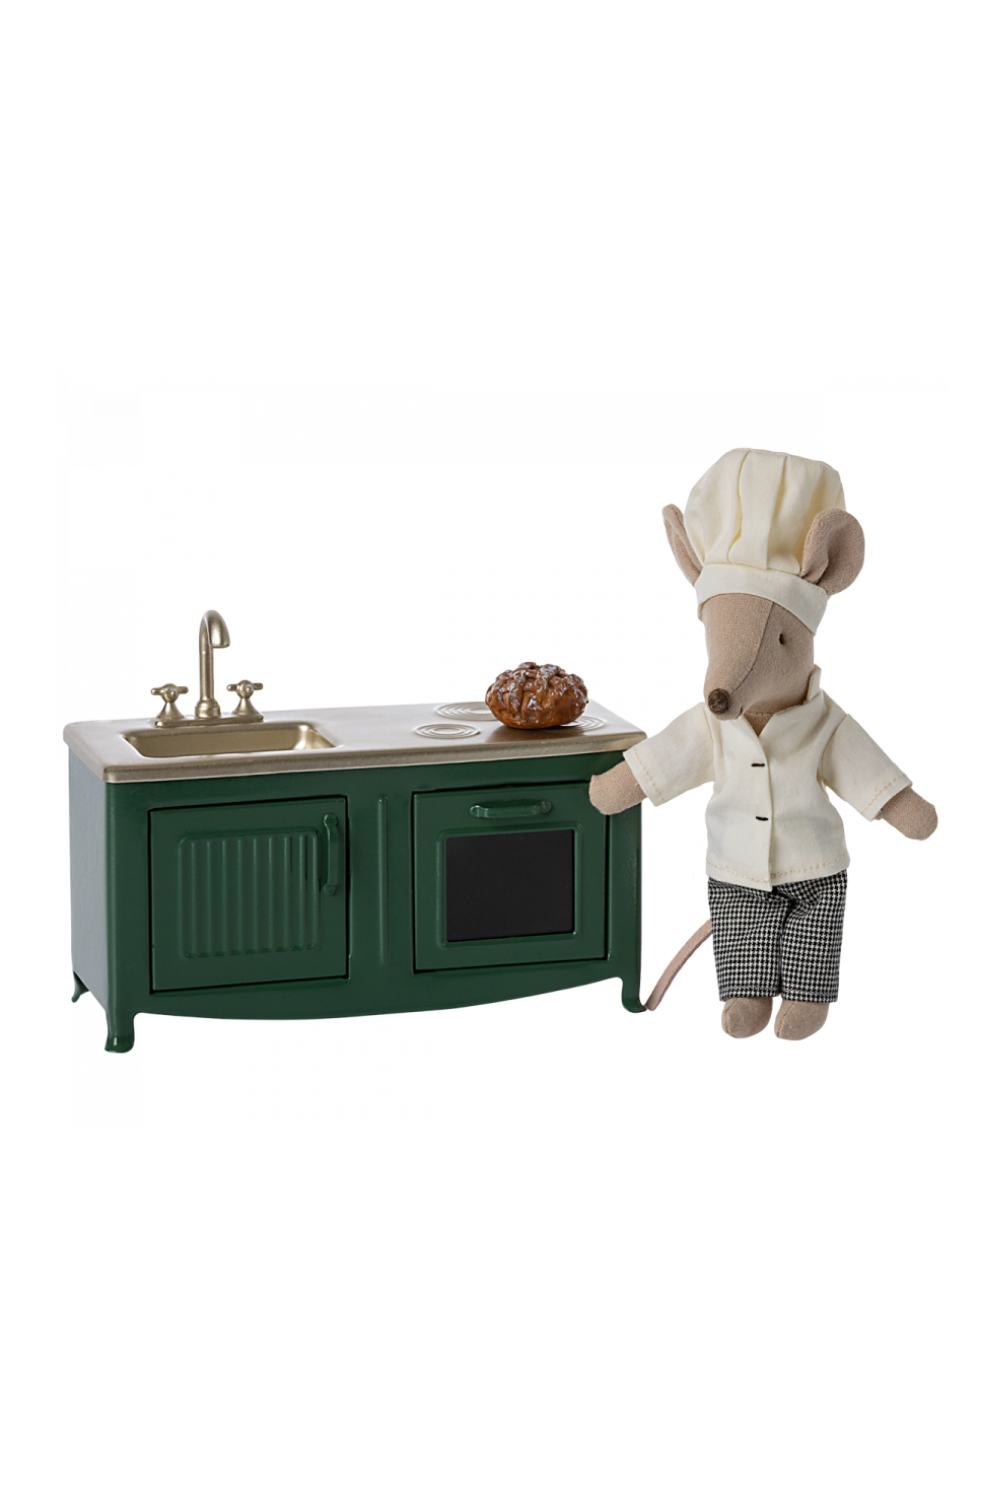 Maileg Kitchen in Dark Green: Miniature Mouse-Sized Version